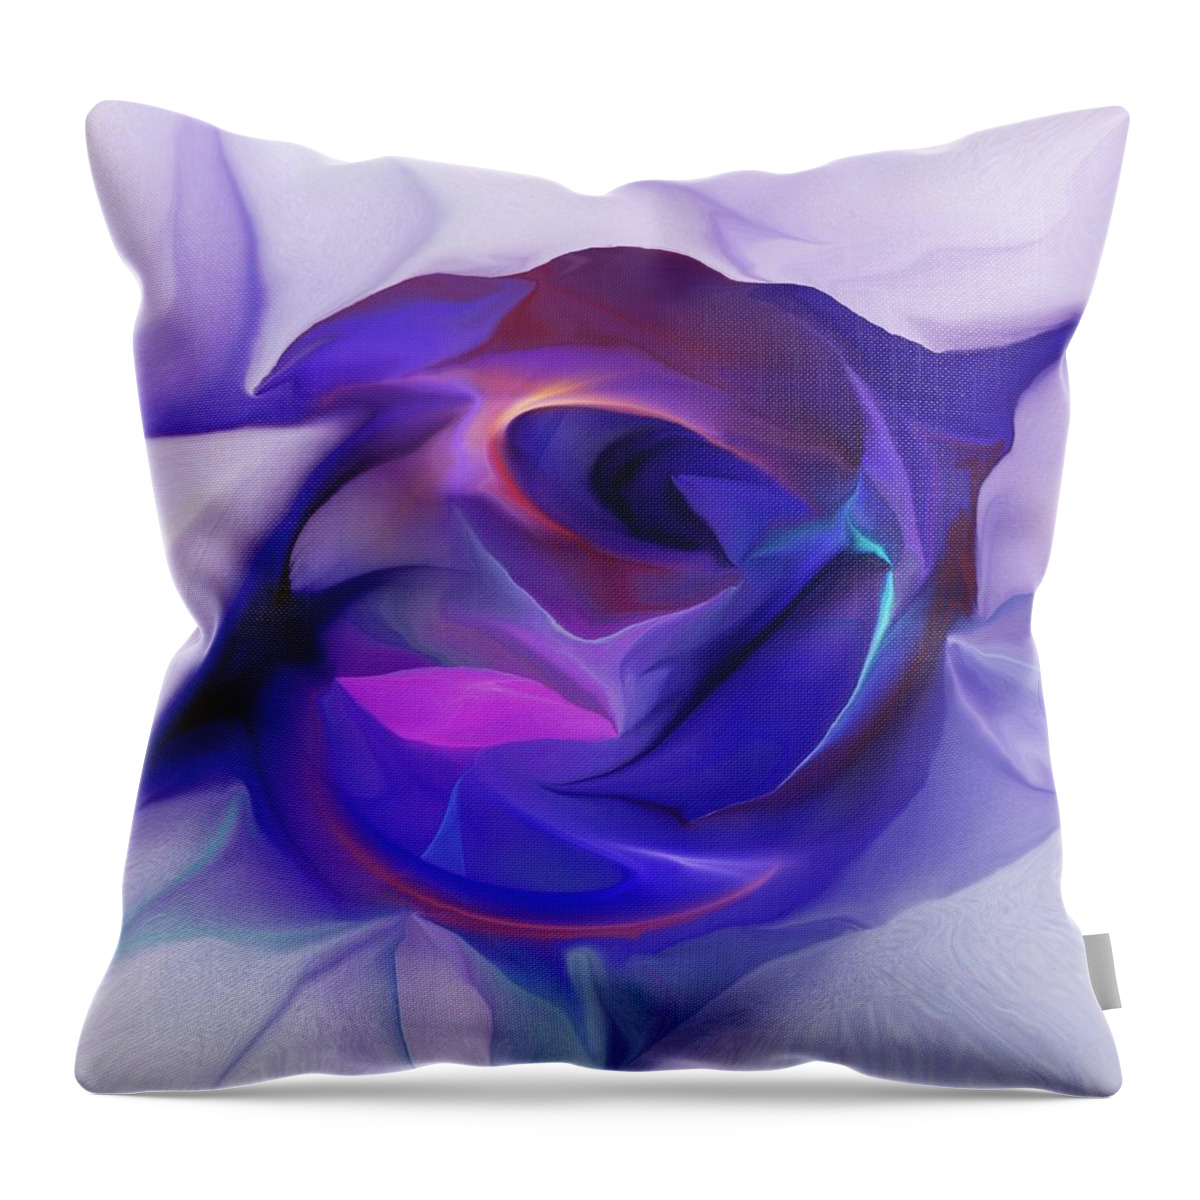 Fine Art Throw Pillow featuring the digital art Energing Artist by David Lane